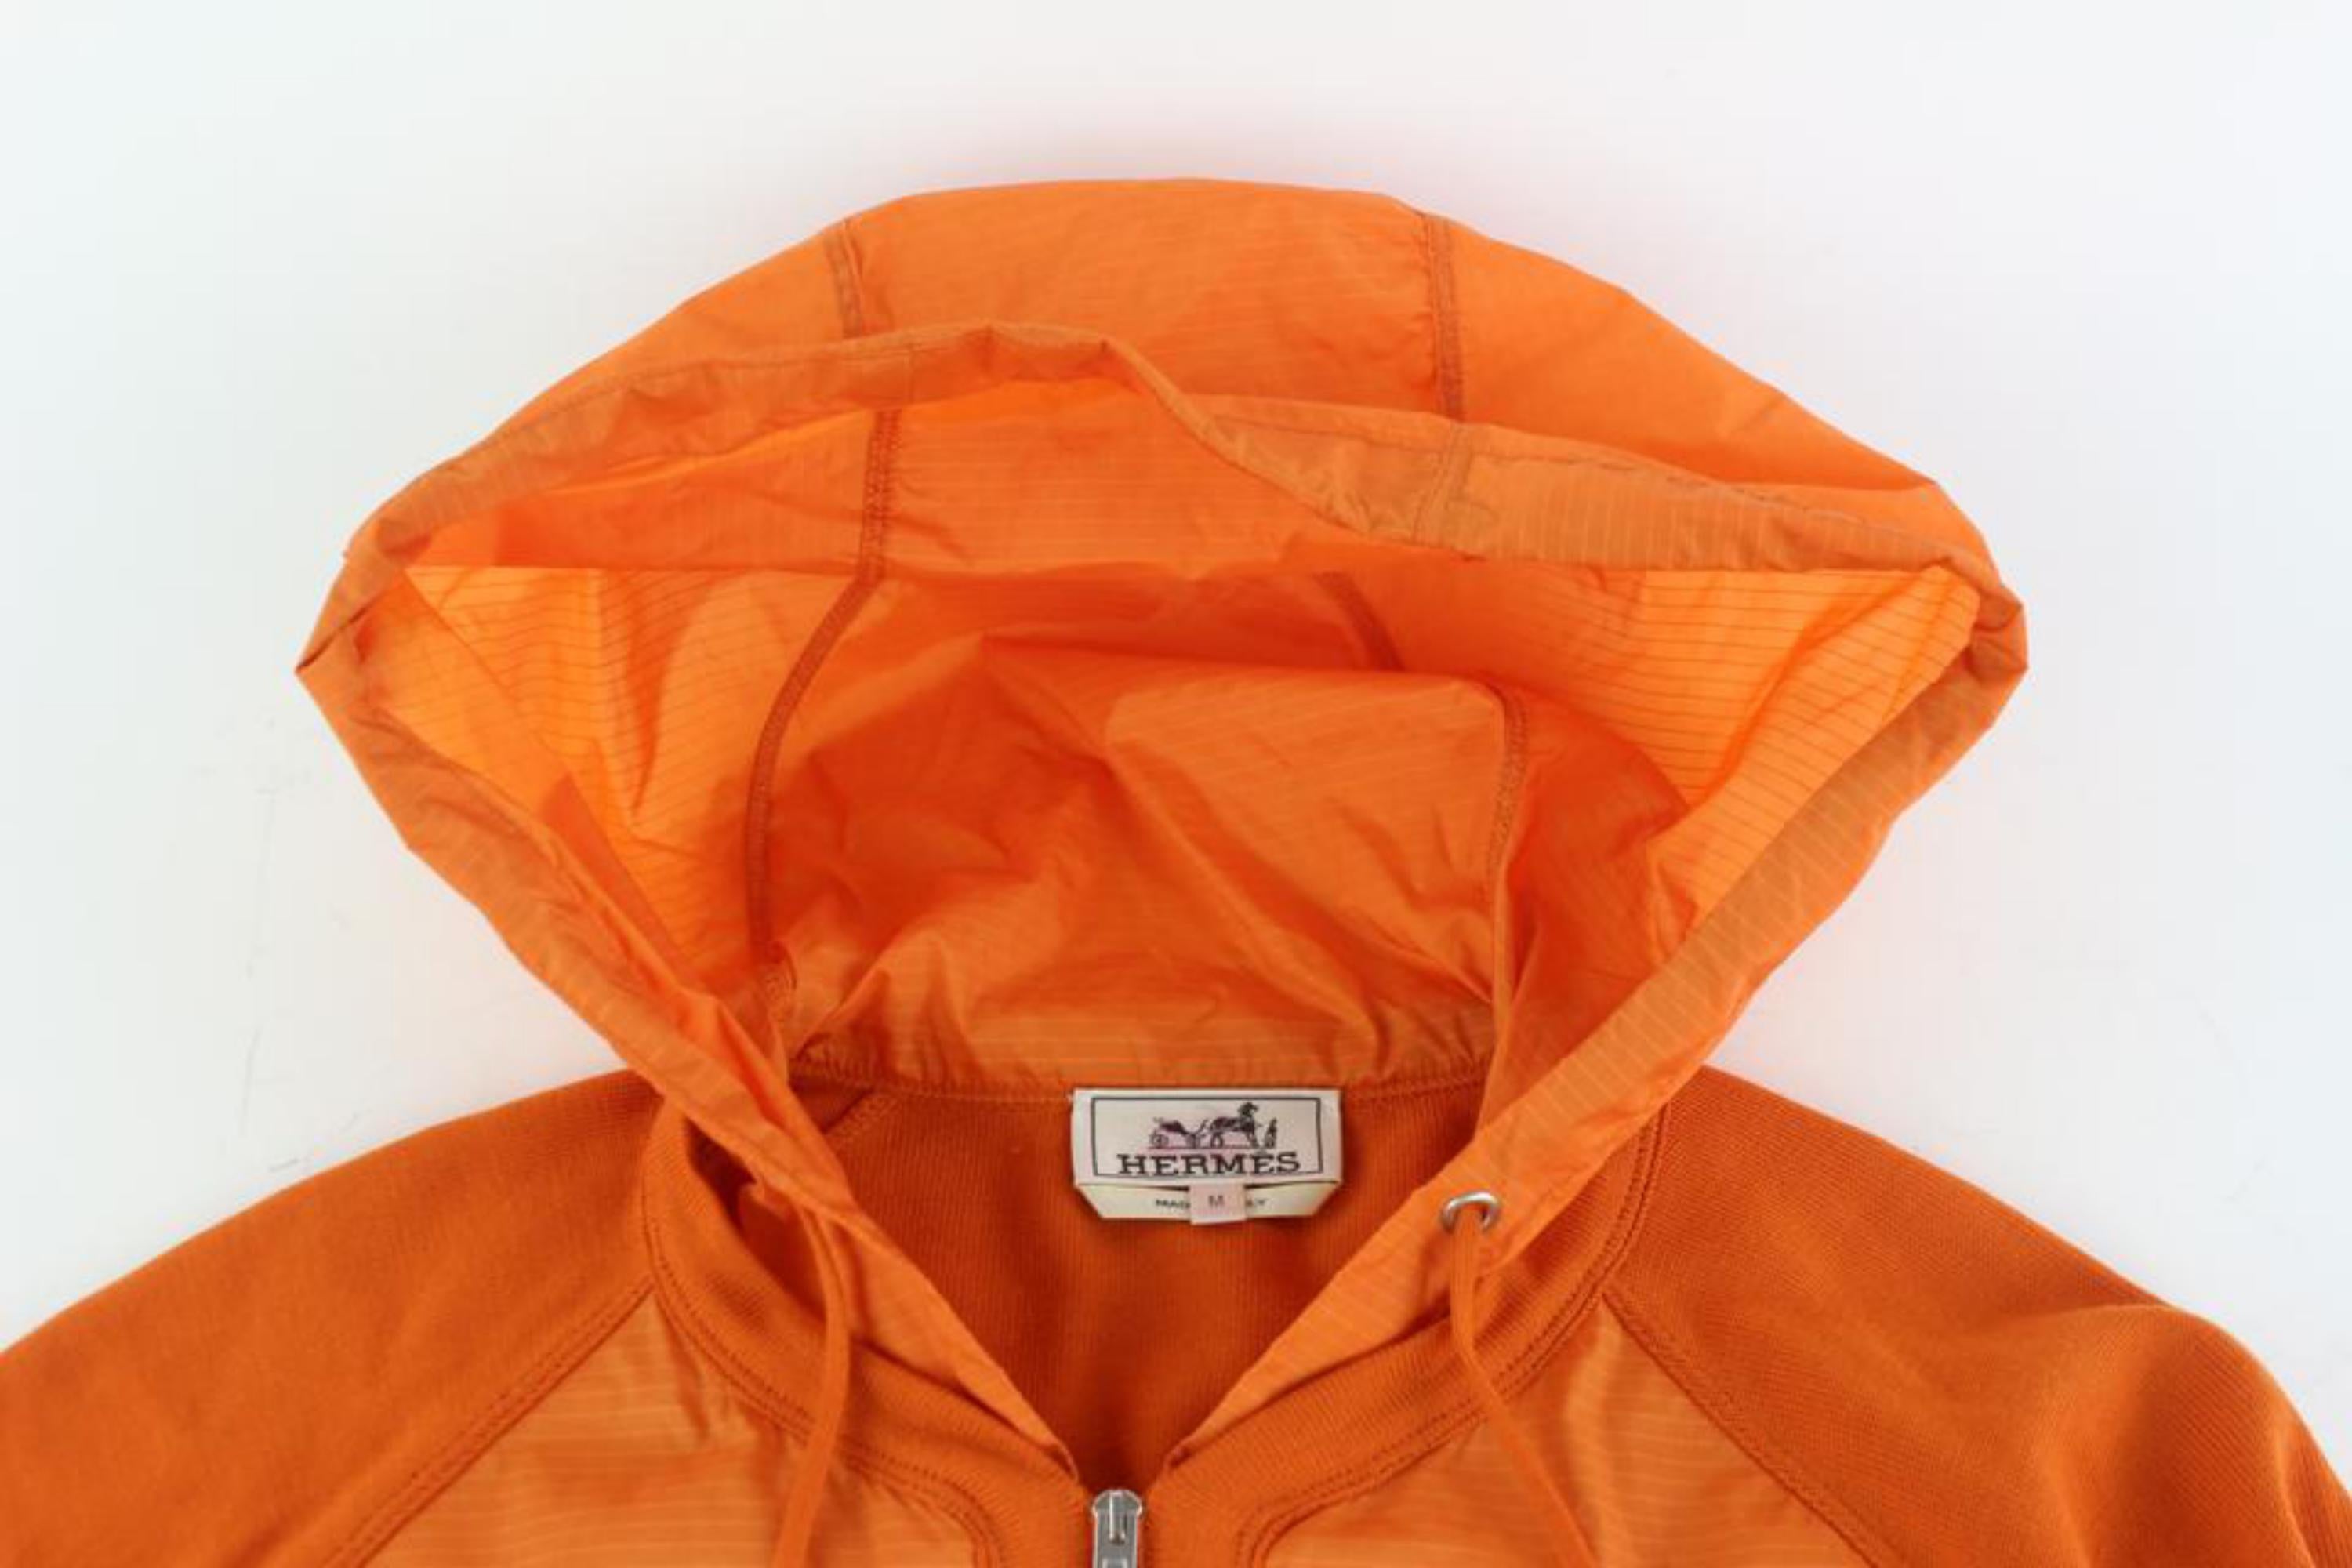 Hermès Orange Blousson Zippe A Capuche Hooded Zip Up Parka Jacket 58hz1009  For Sale 4